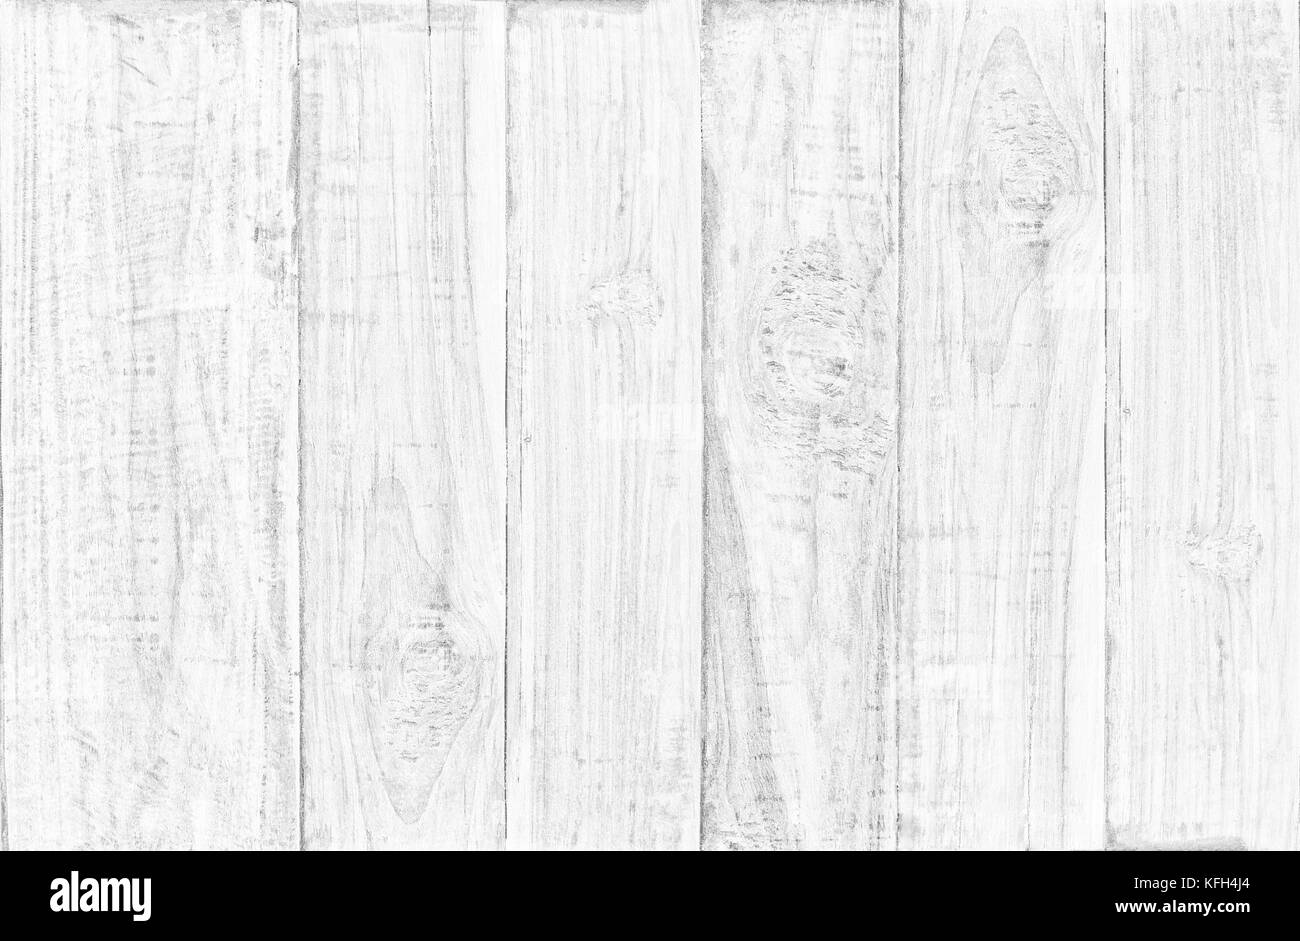 Vista superior de la tabla de madera blanca de fondo textura de madera nos utilice para el telón de fondo del diseño de fondo Foto de stock